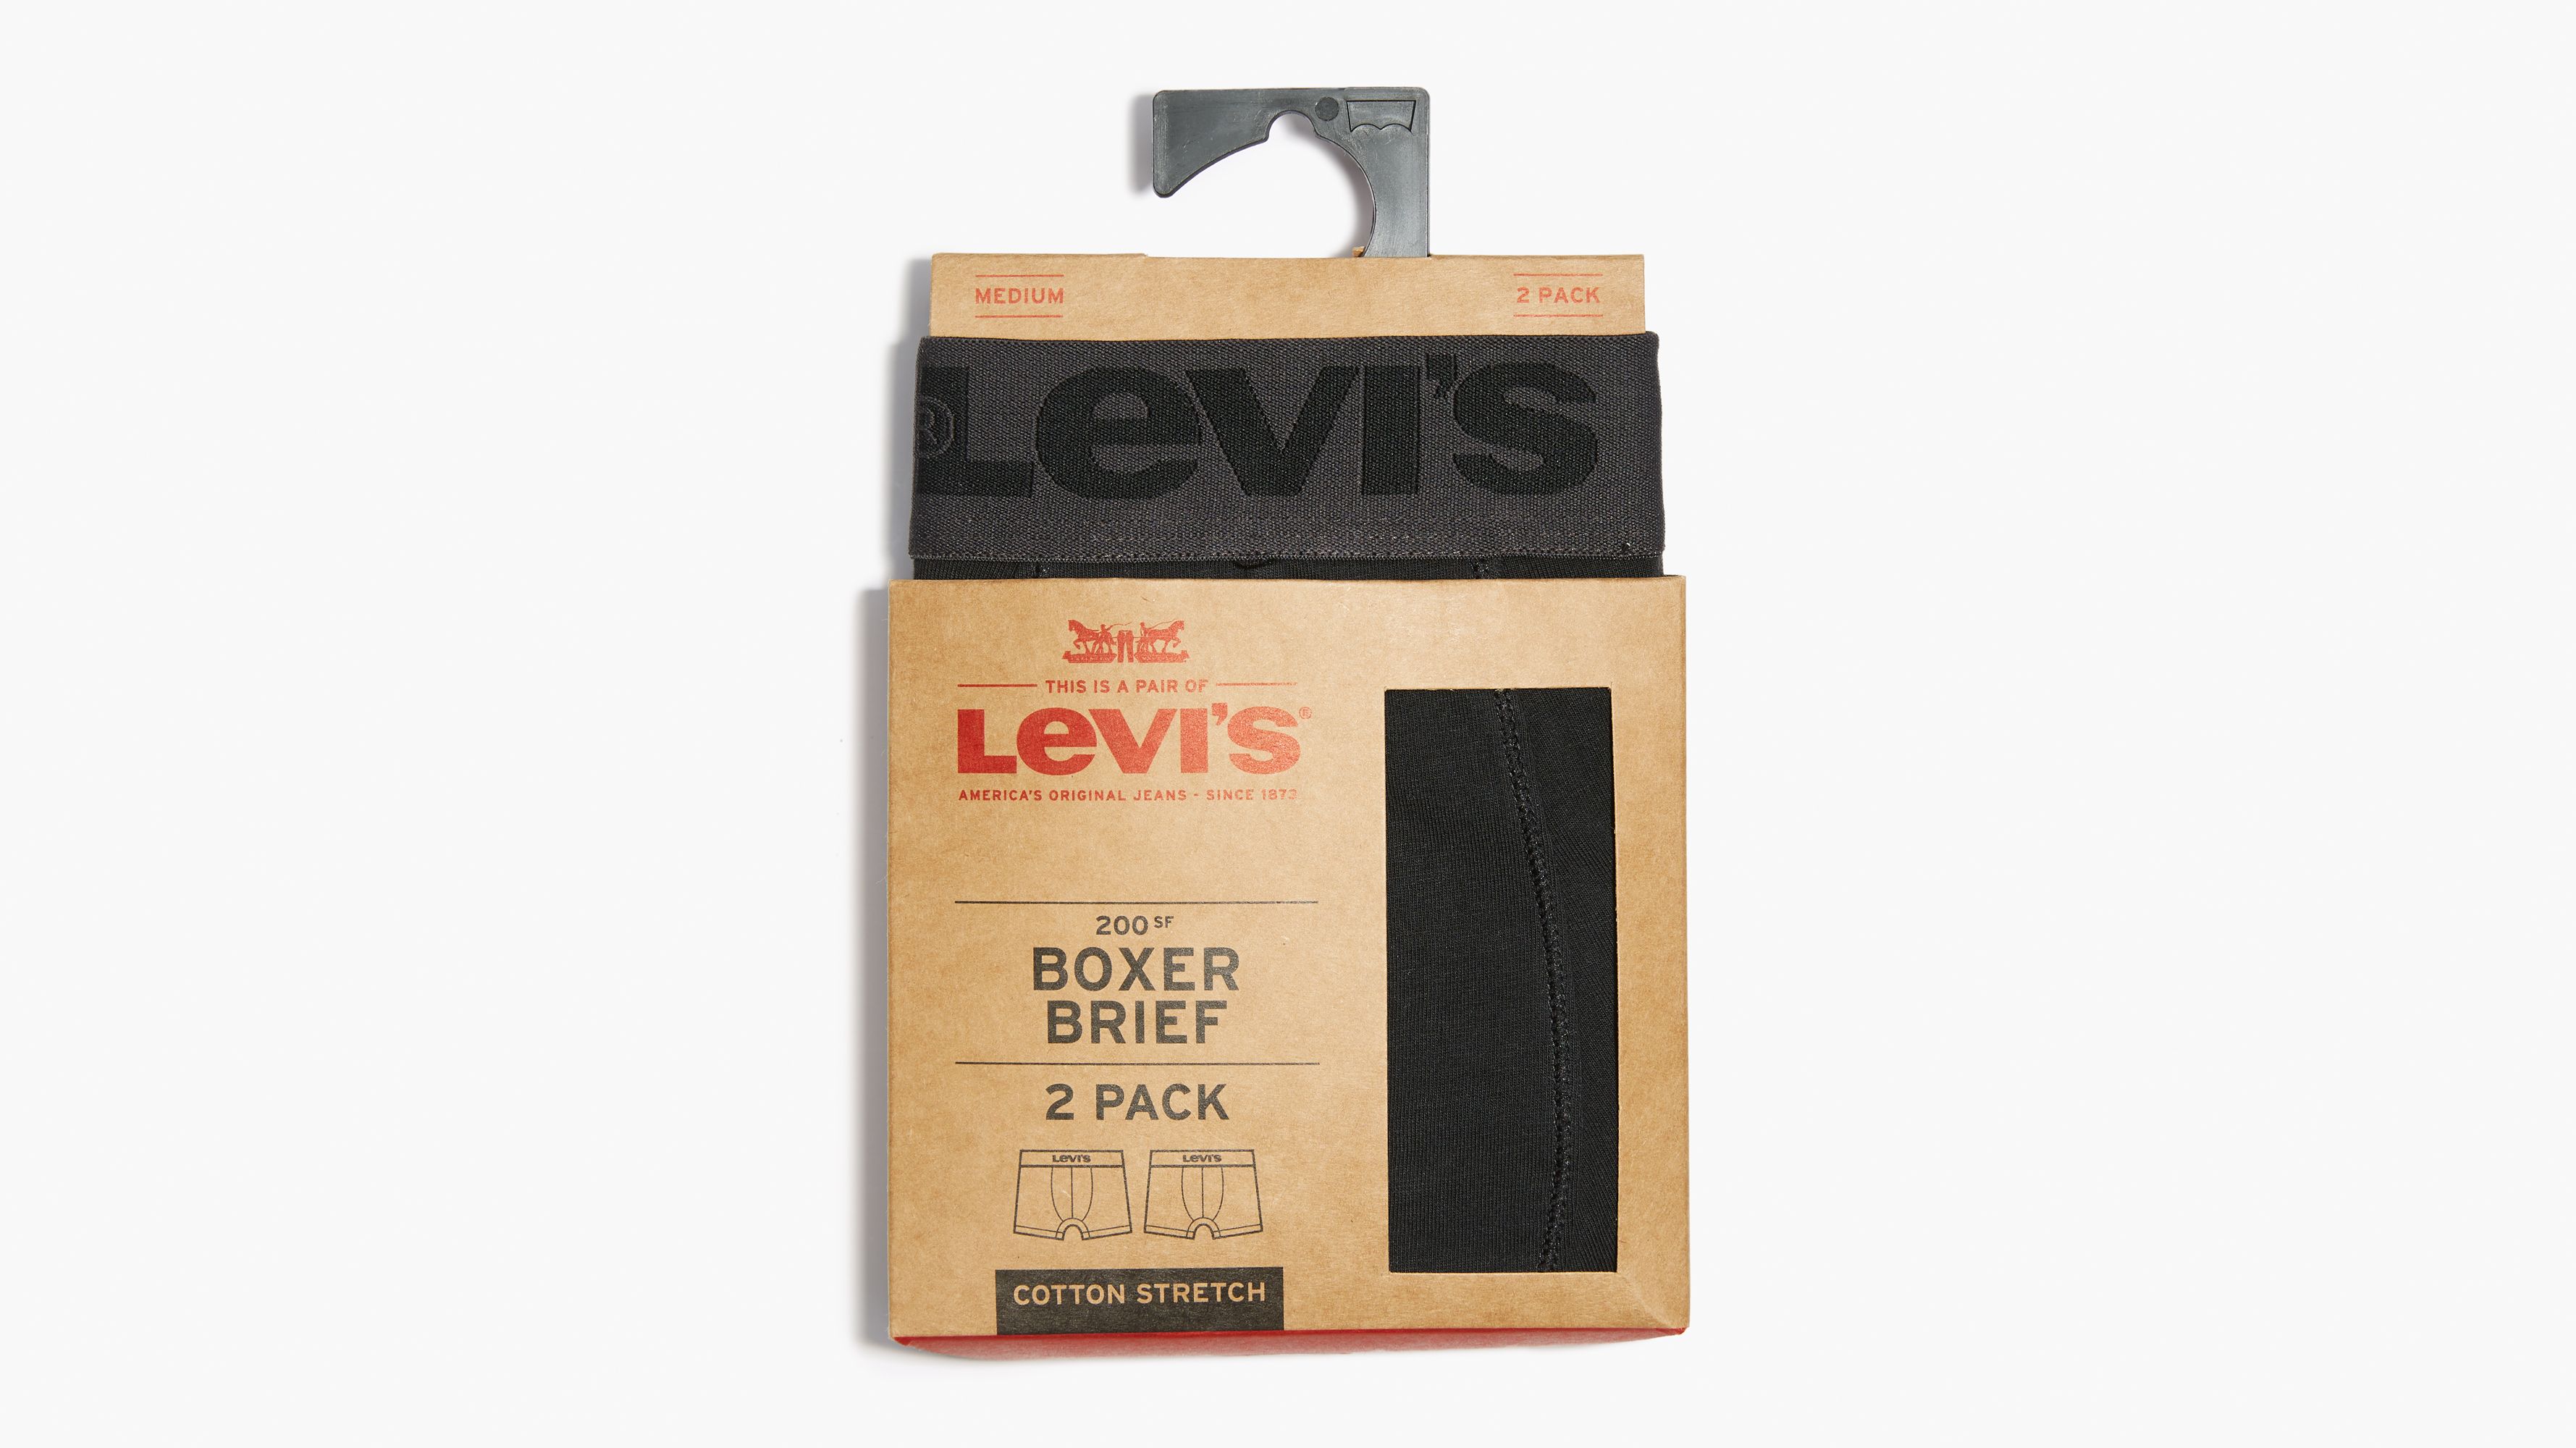 levis boxer briefs size chart